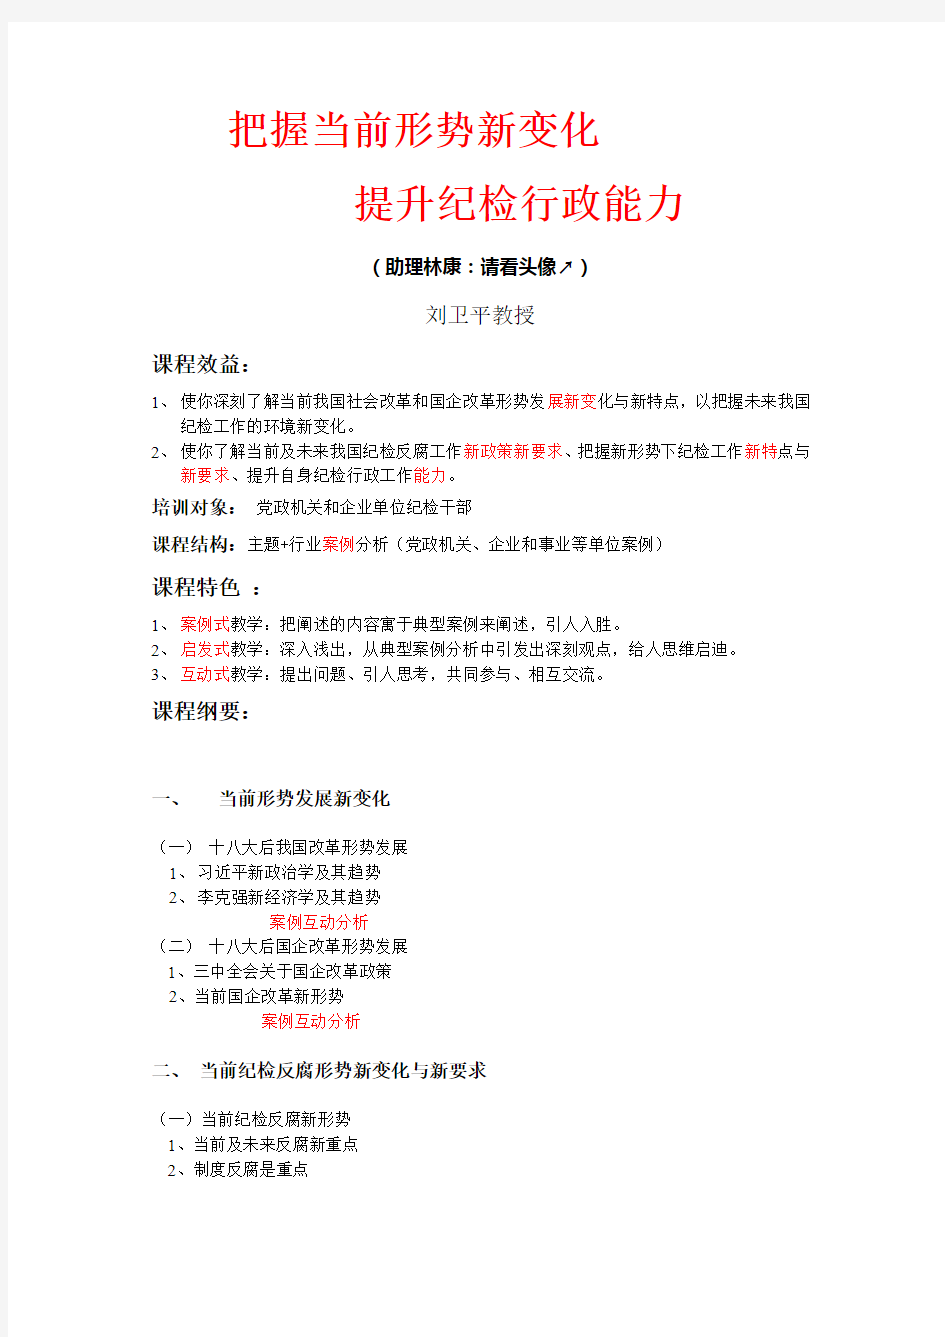 上海党校刘卫平：把握当前形势新变化,提升纪检行政能力(简照)14-9